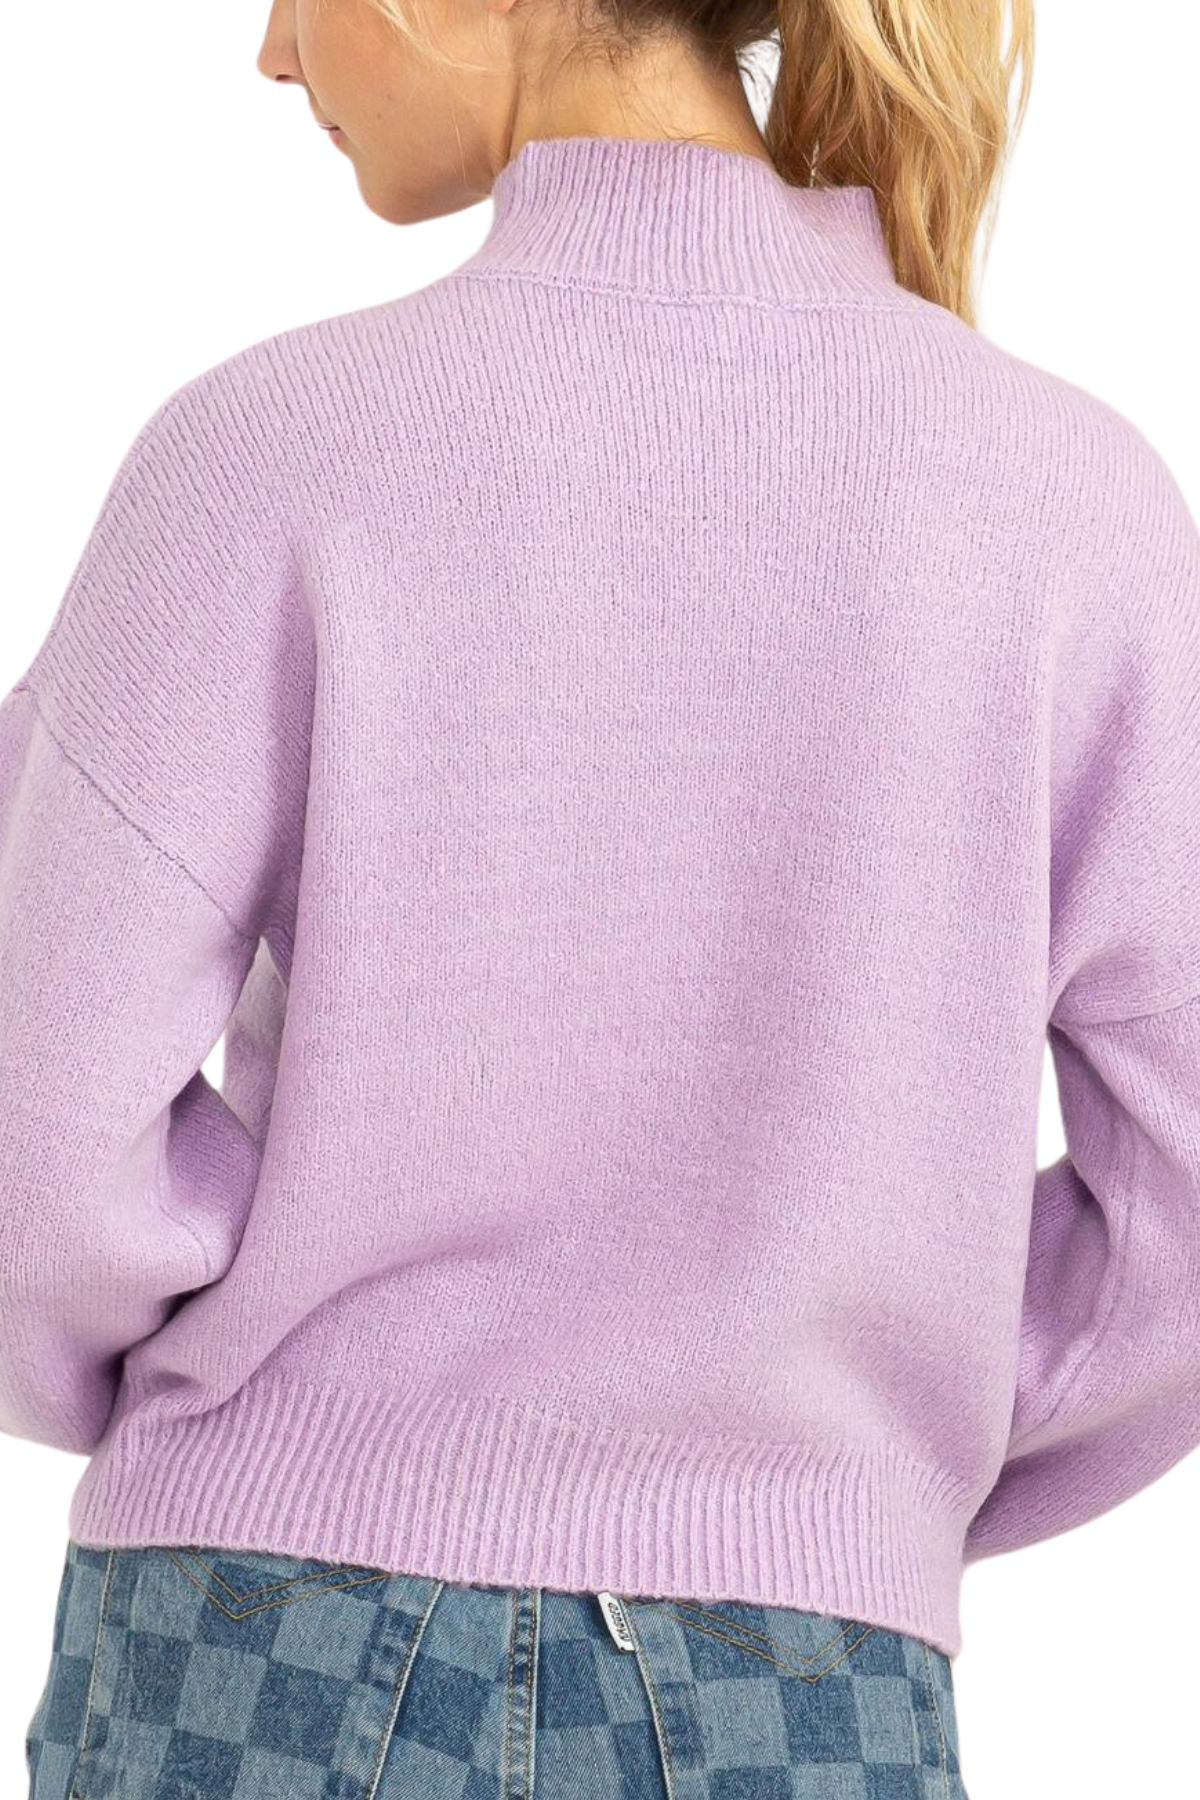 Tarrah Lavender Sweater